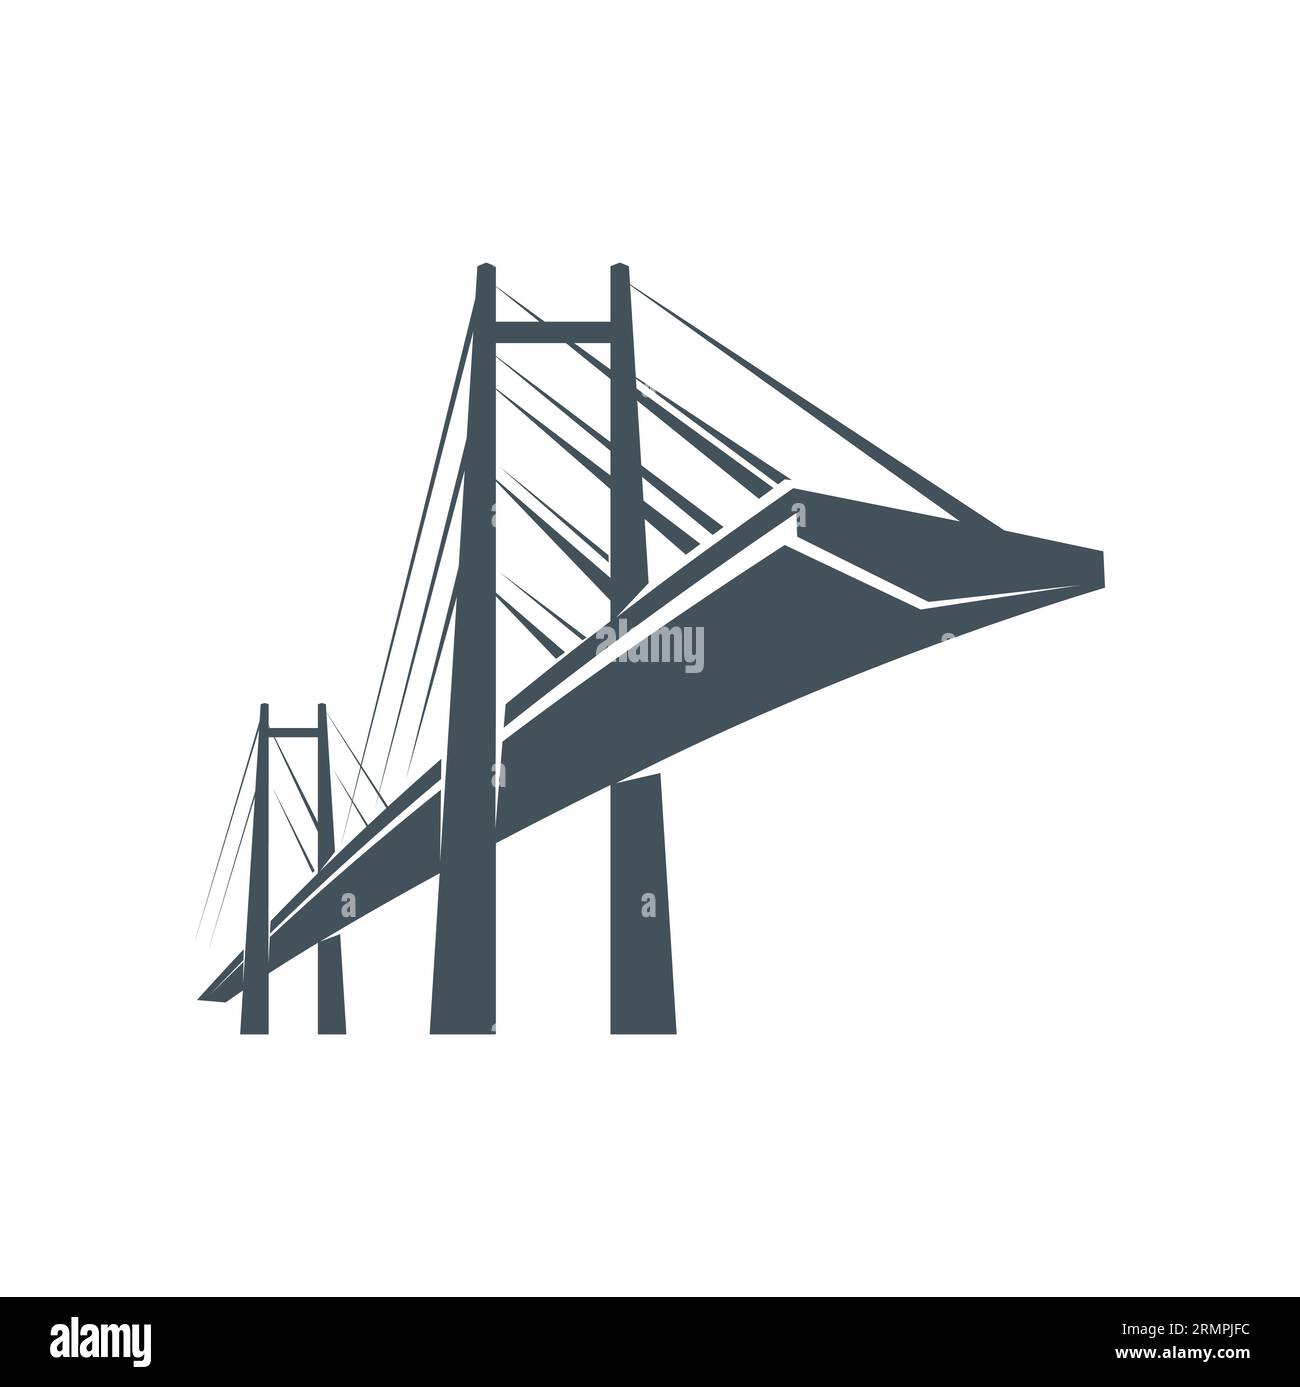 Icona della costruzione di ponti, architettura della città vettoriale e viaggi urbani. Edificio moderno con una silhouette di ponte sospeso, strada o cavalcavia autostradale con to Illustrazione Vettoriale